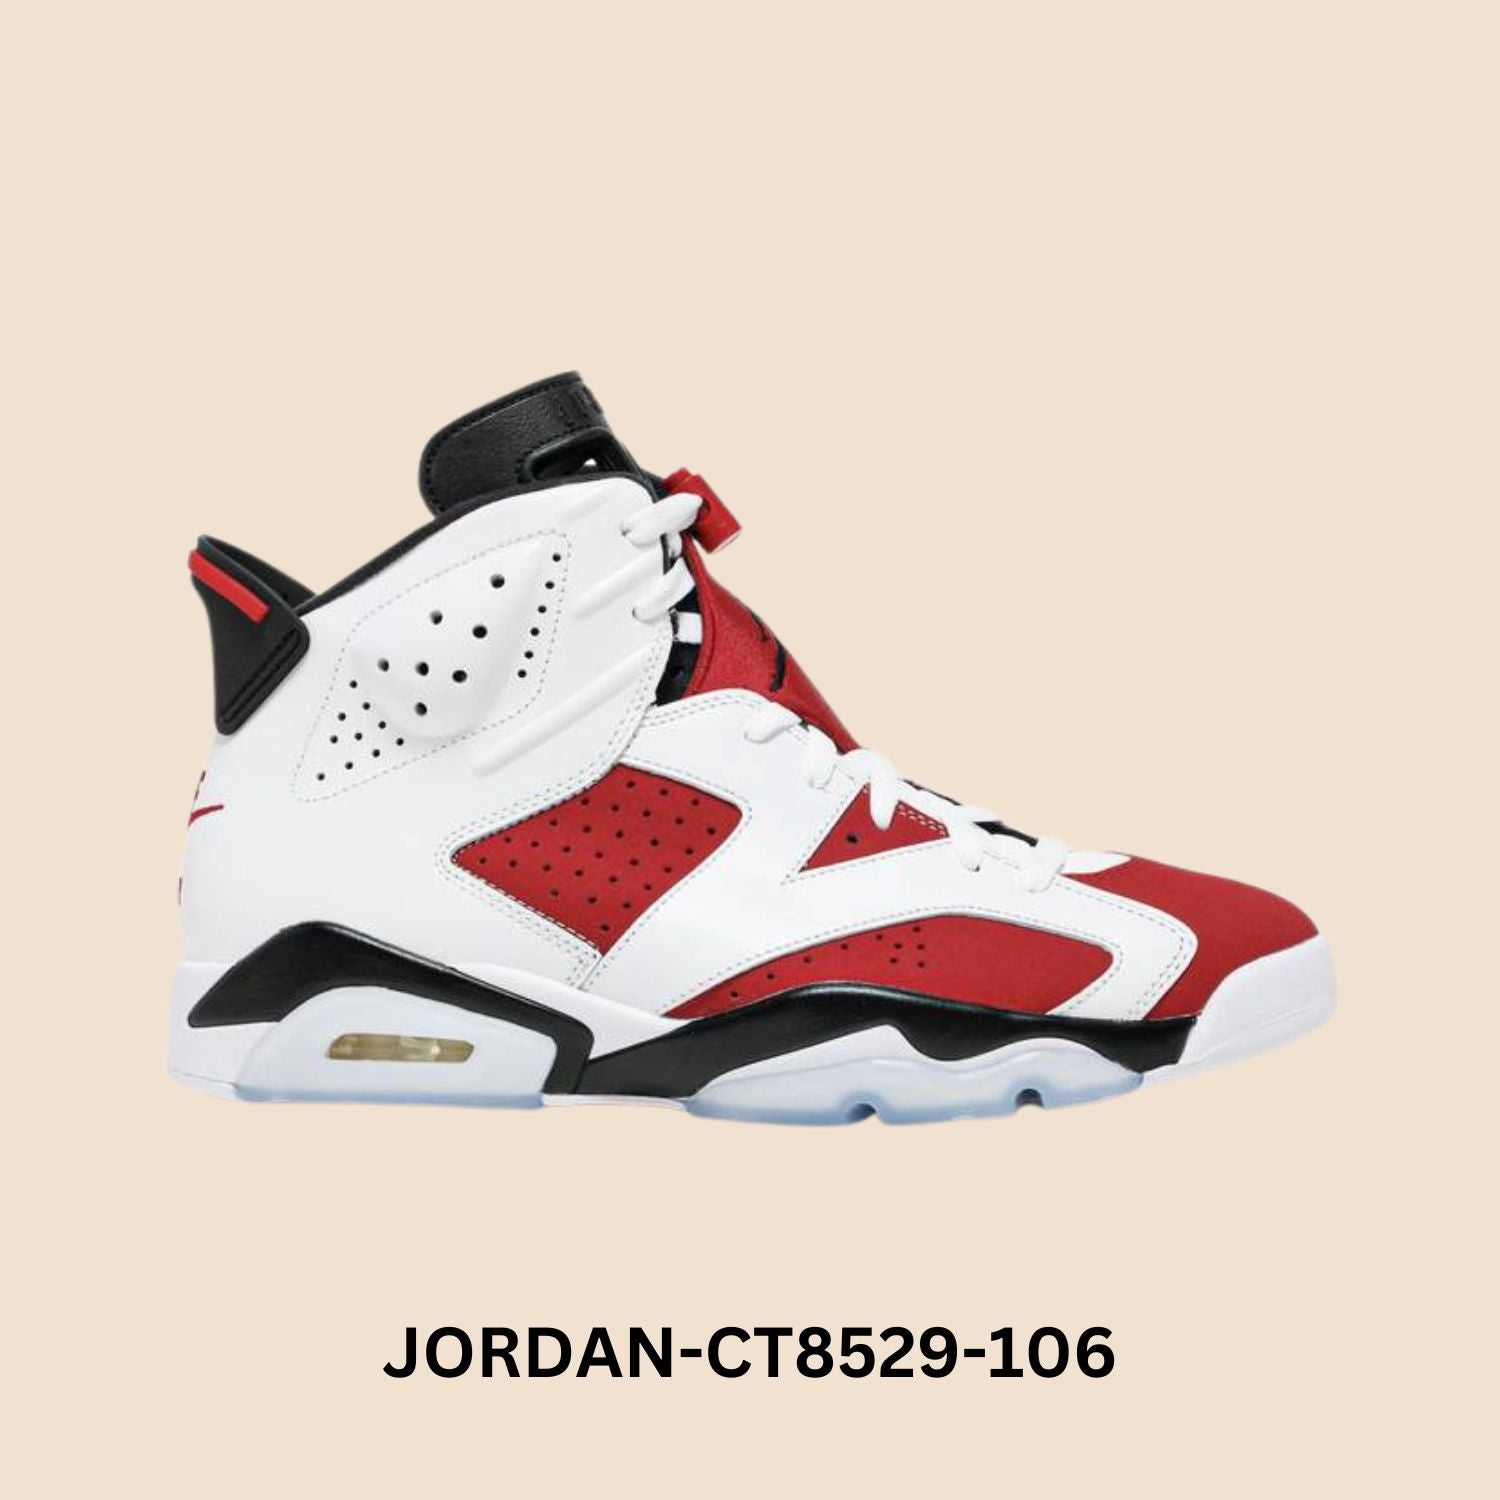 Air Jordan 6 Retro "Carmine" Men's Style# CT8529-106